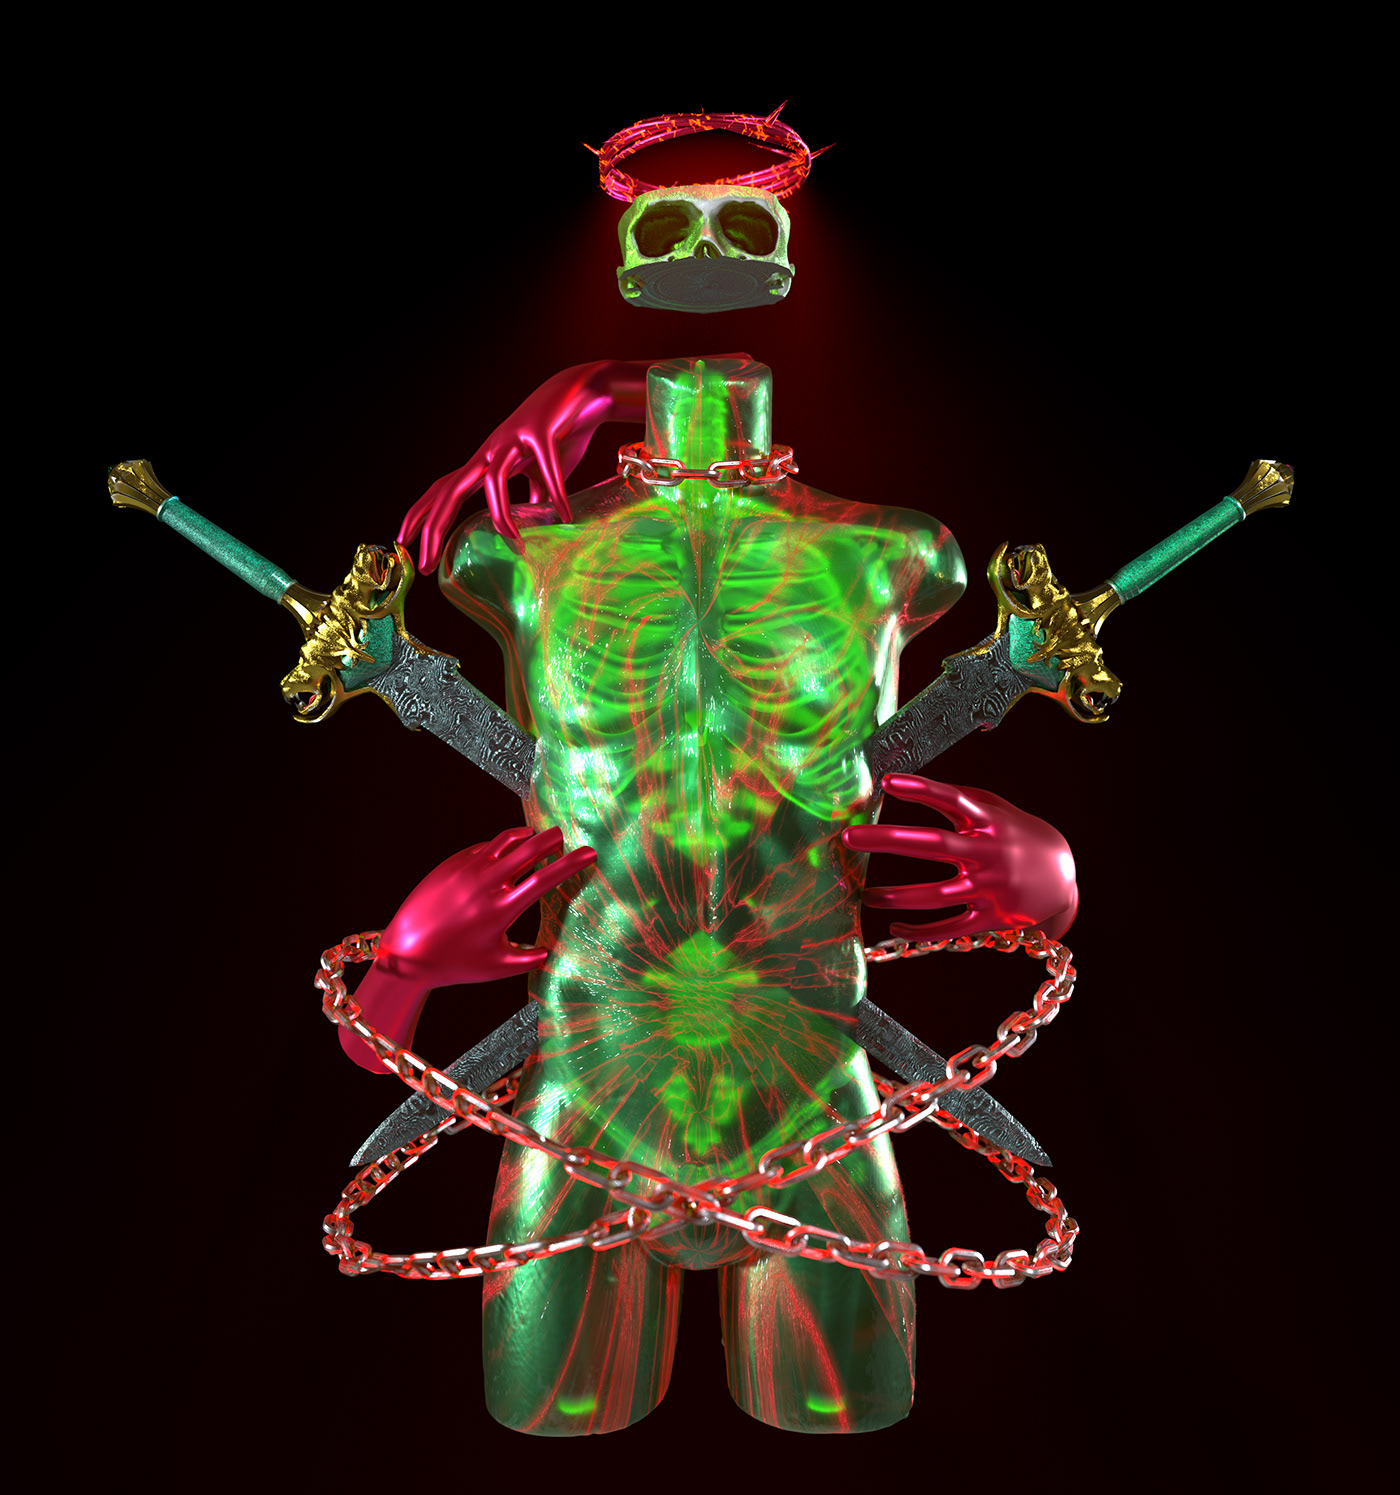 skull body concept art 3D cinema4d skeleton modern art ILLUSTRATION  Render fluo